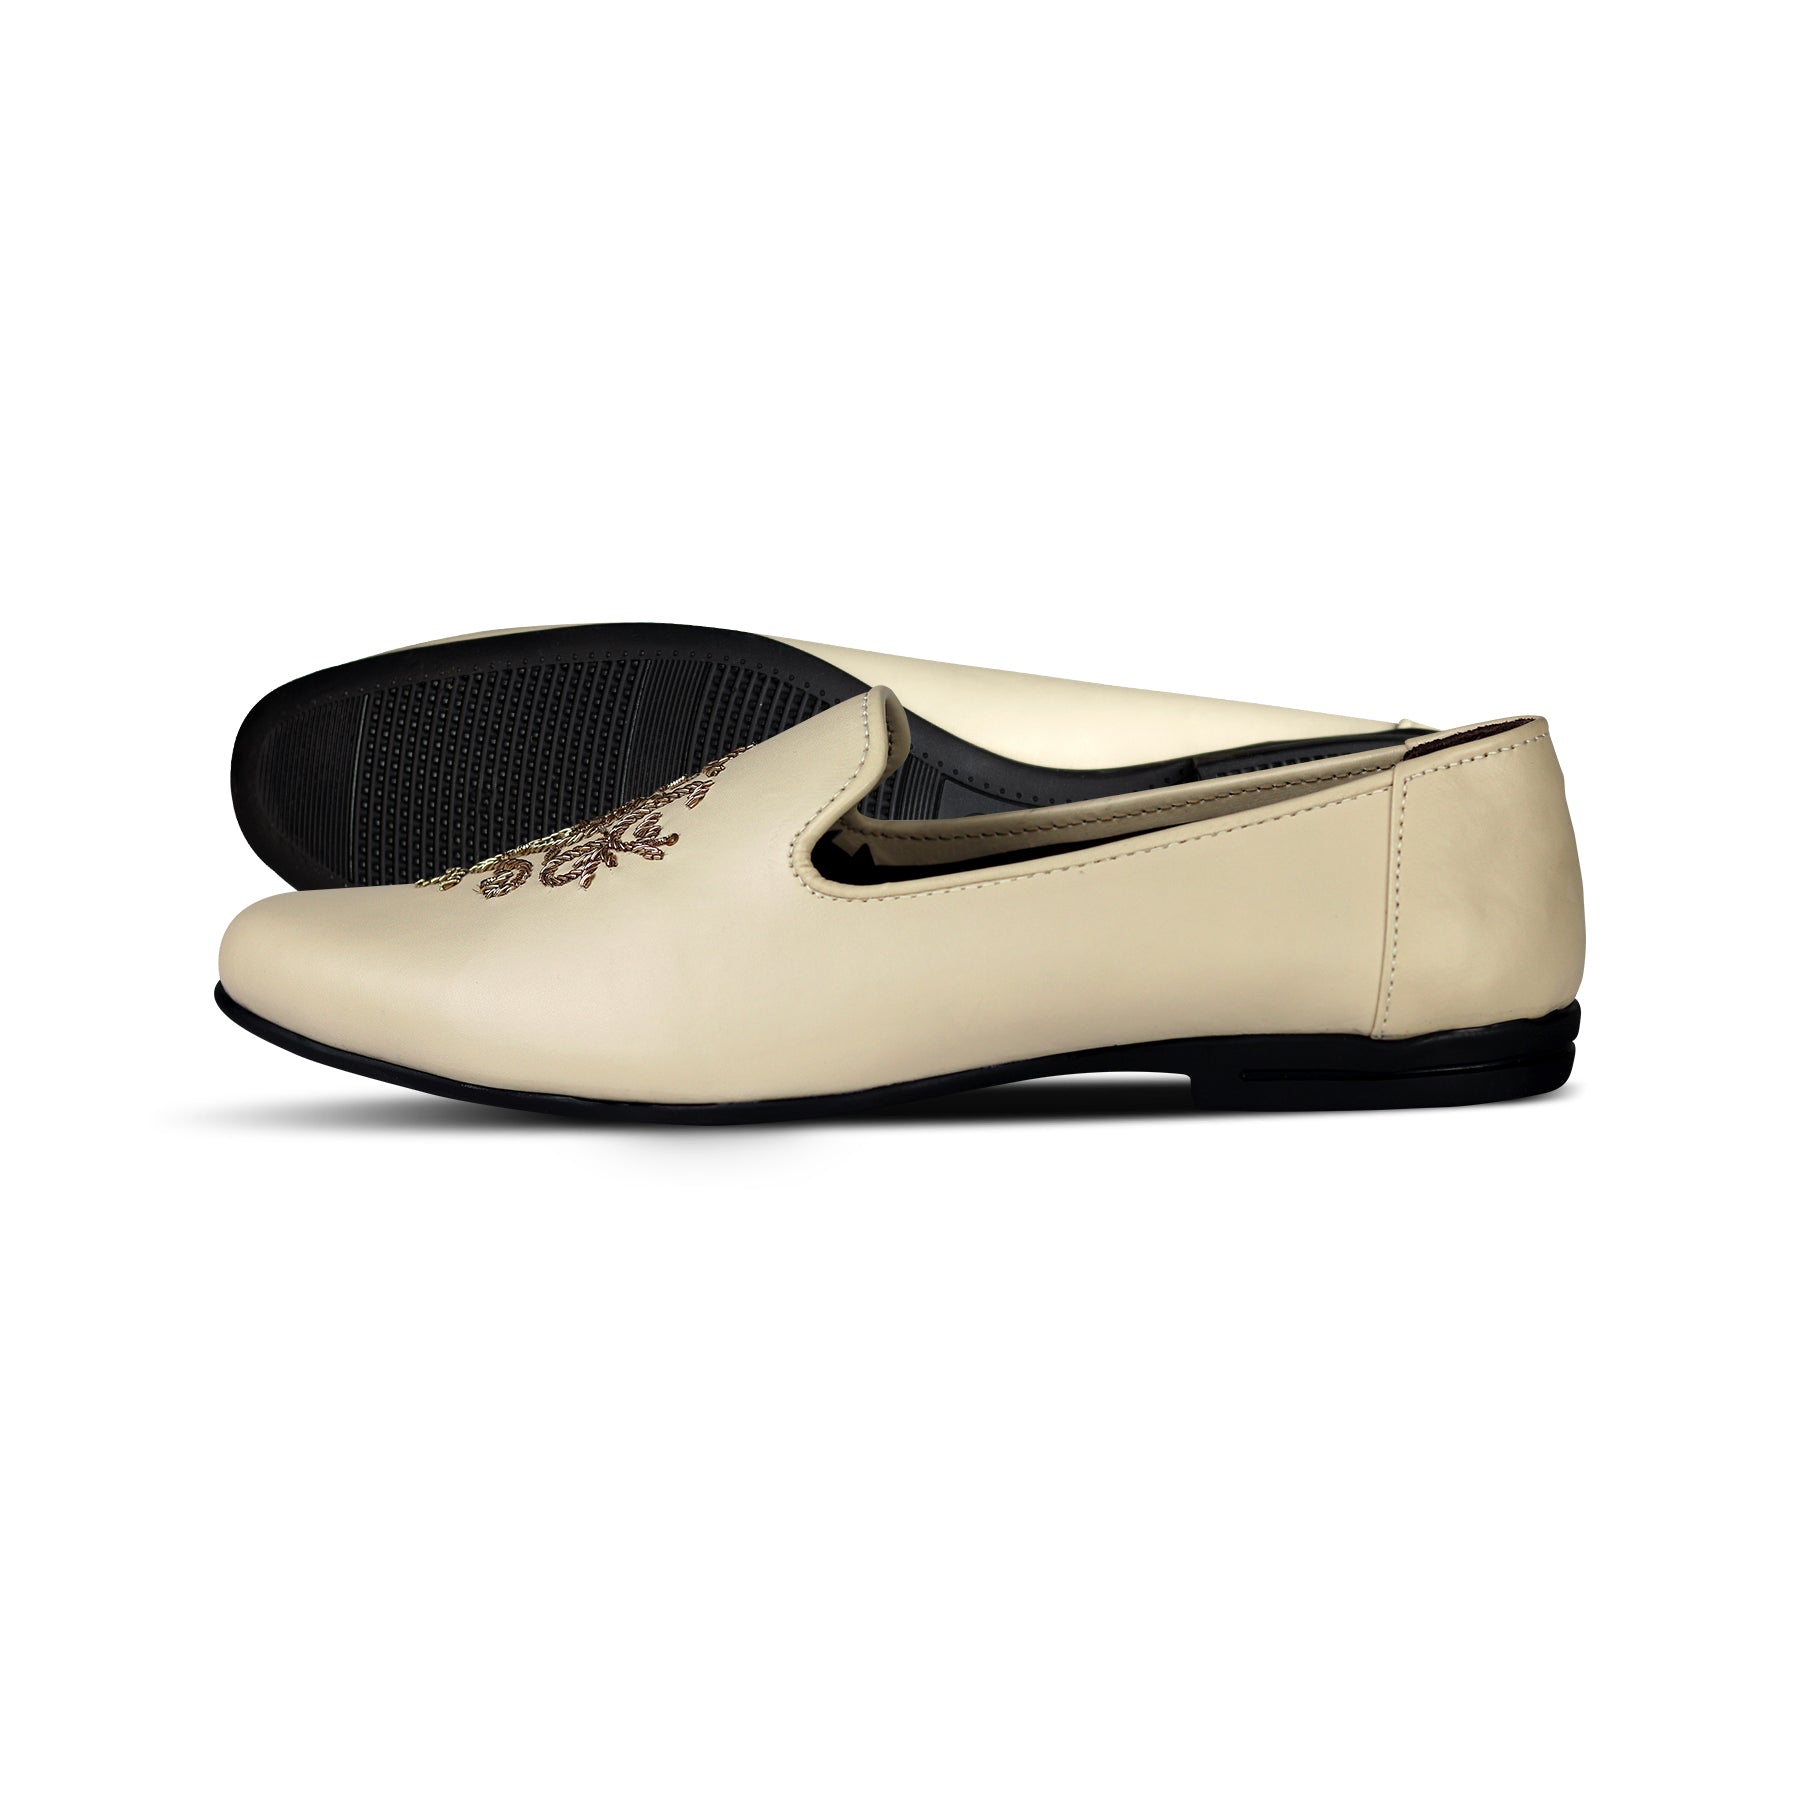 White Leather Zardosi Shoe